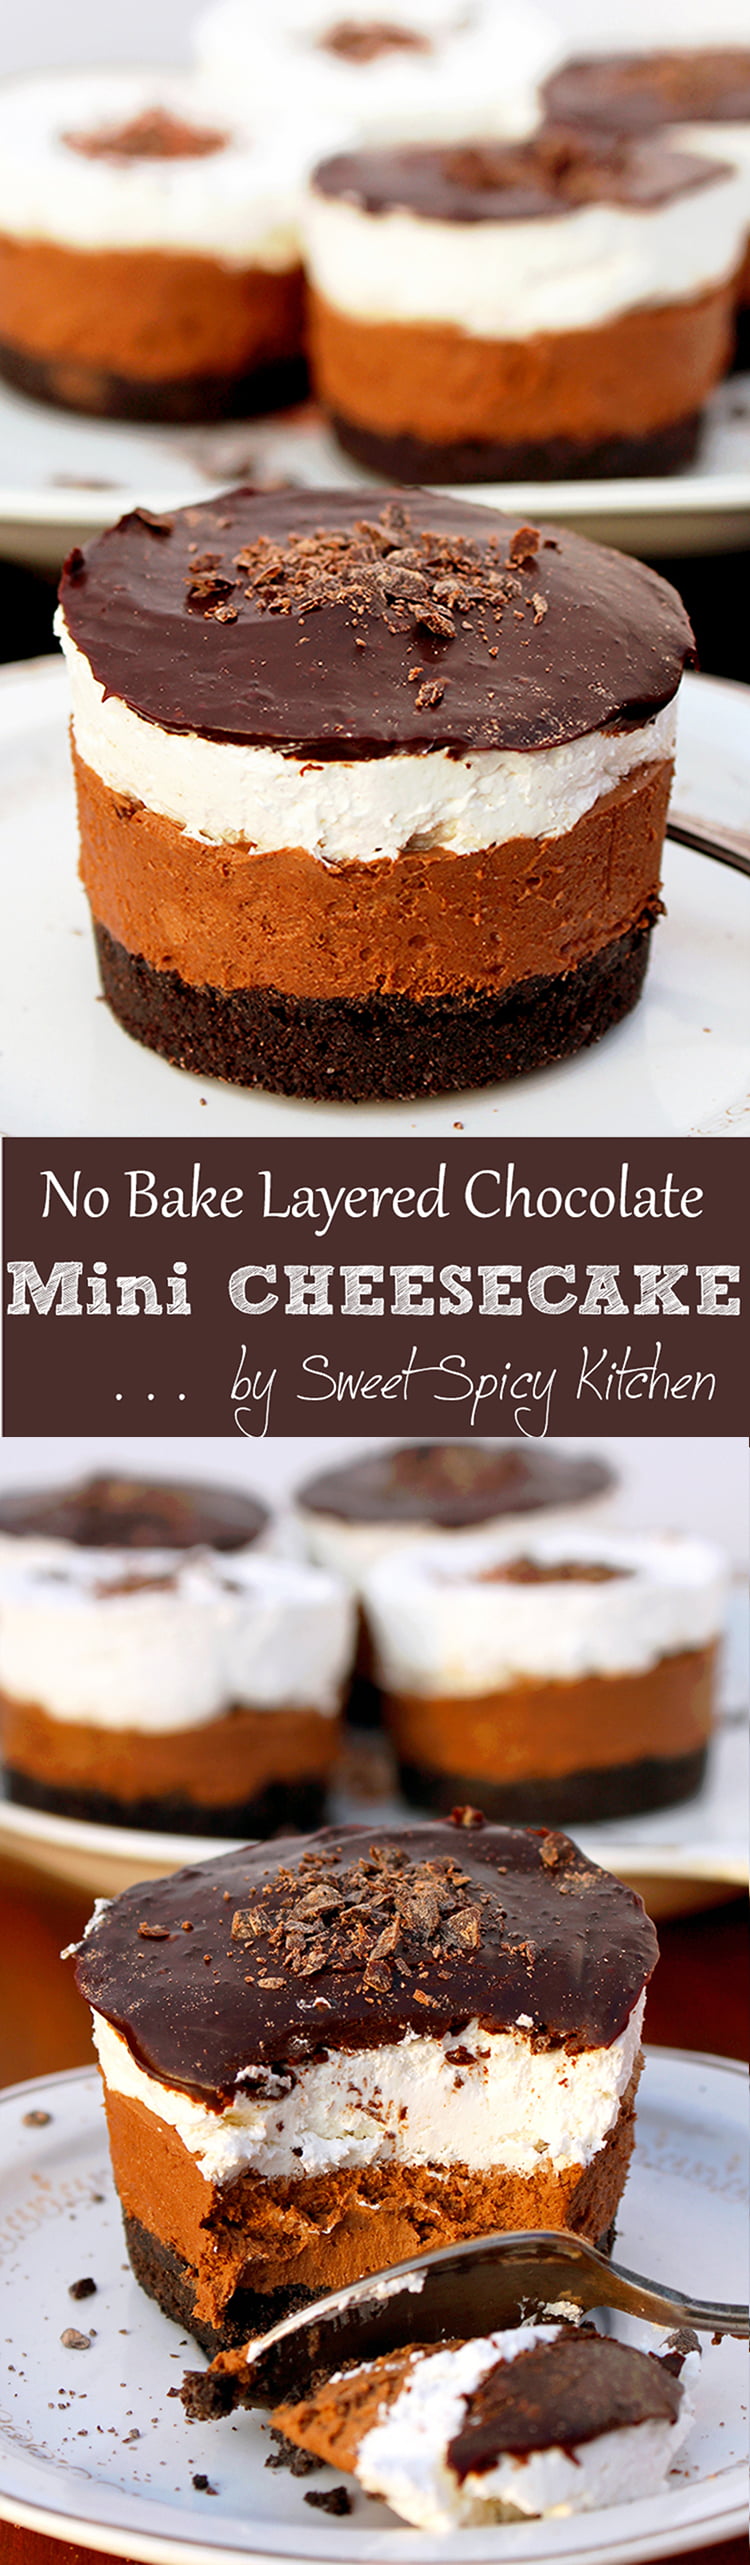 No Bake Layered Chocolate Mini Cheesecake